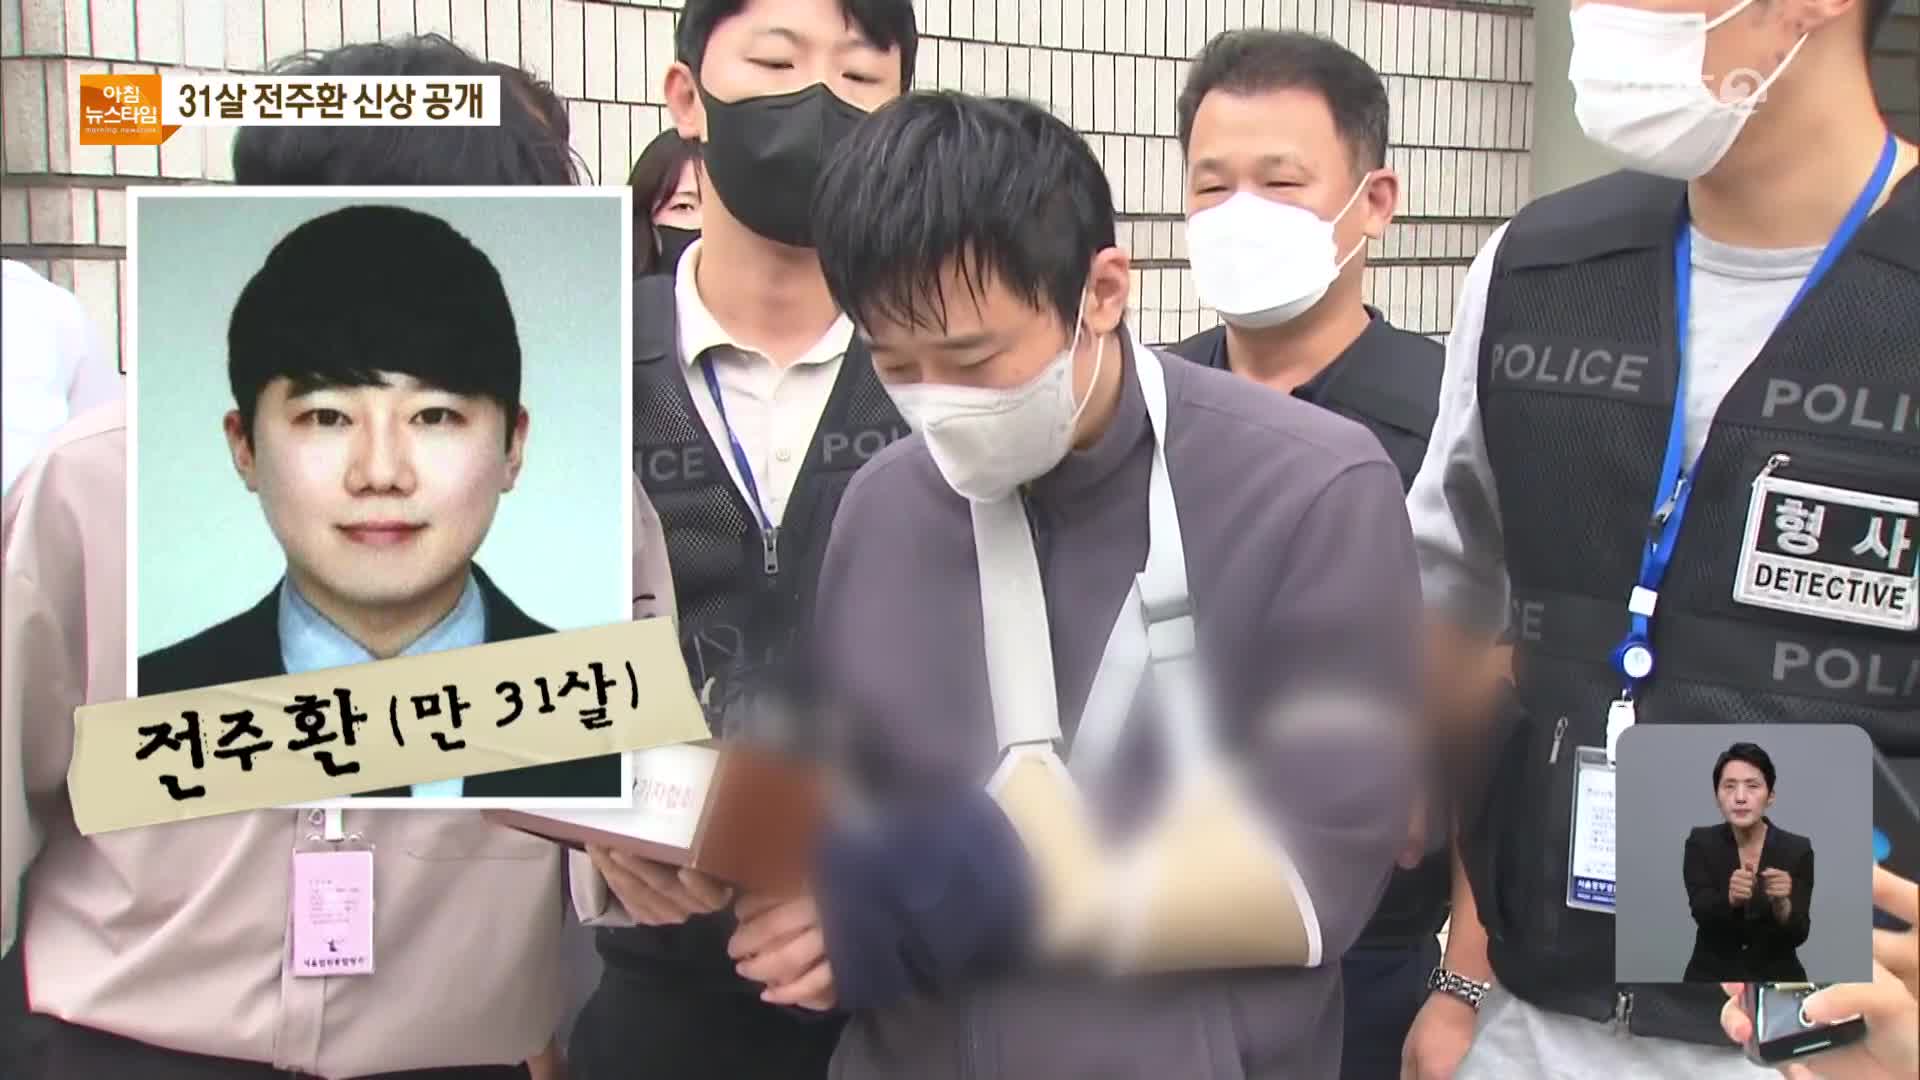 ‘신당역 살인’ 피의자 신상공개…경찰 “스토킹 전수조사”